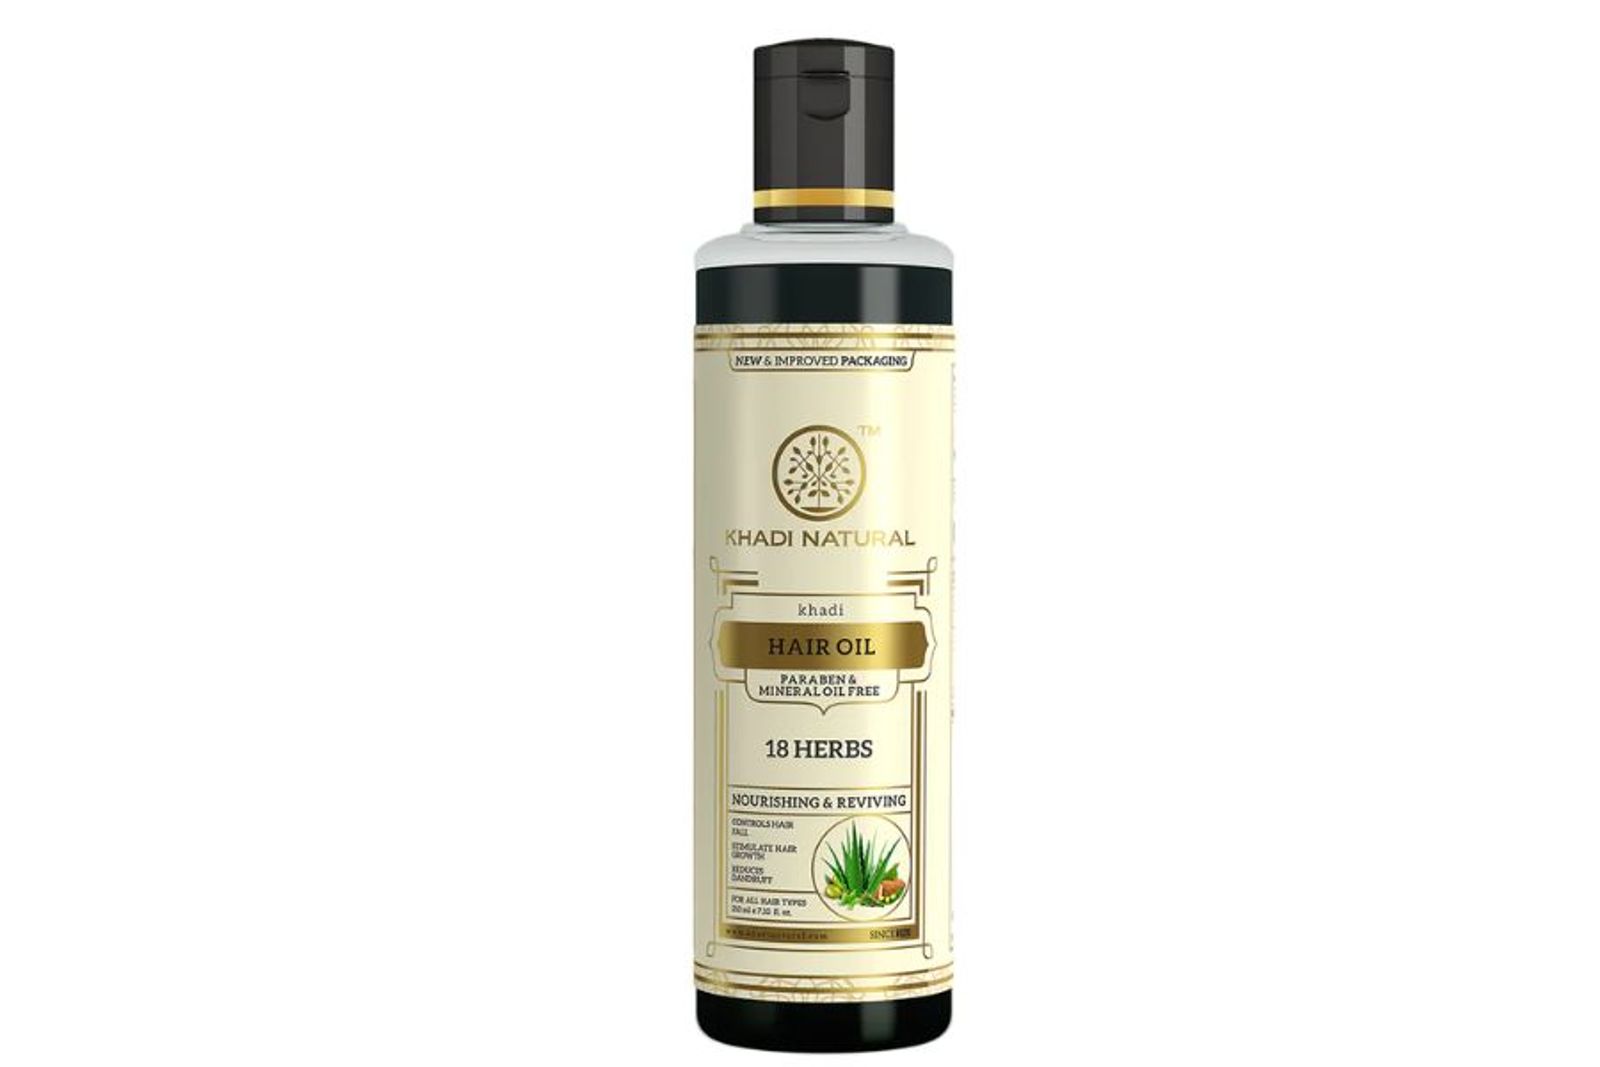 Khadi Natural 18 Herbs Hair Oil Paraben Mineral Oil Free